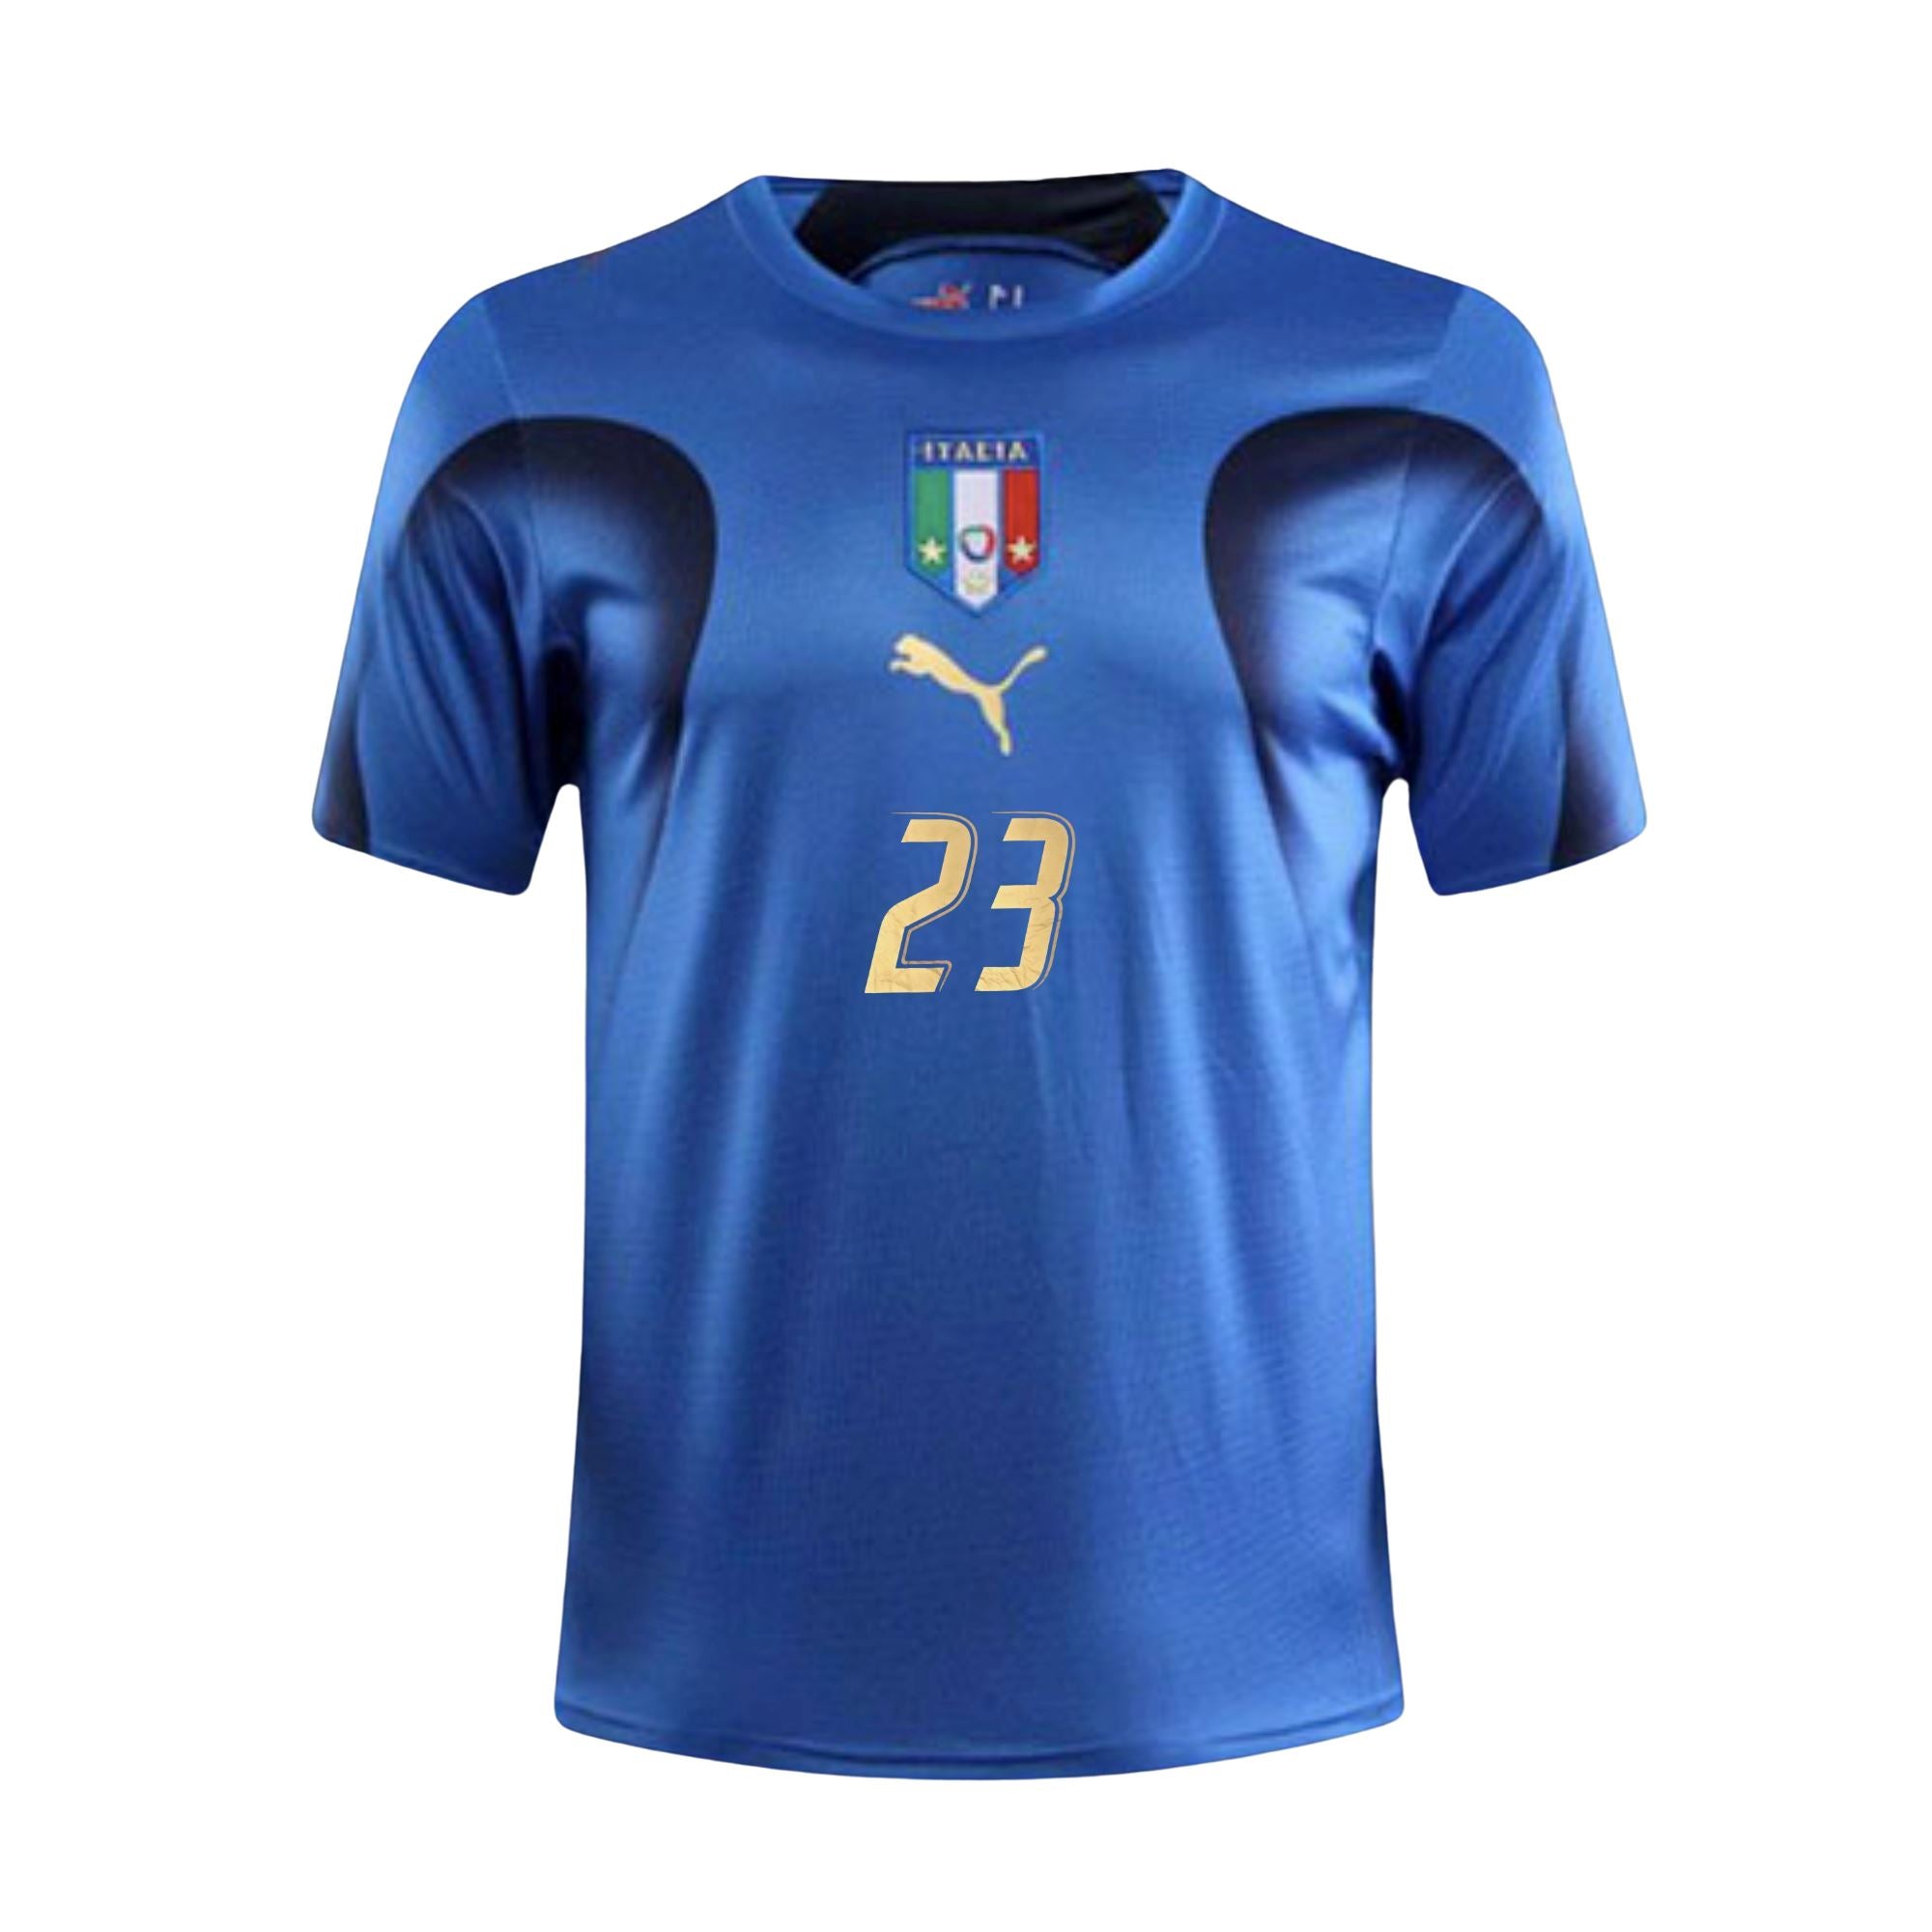 Football teams shirt and kits fan: Italy World Cup 2006 kits